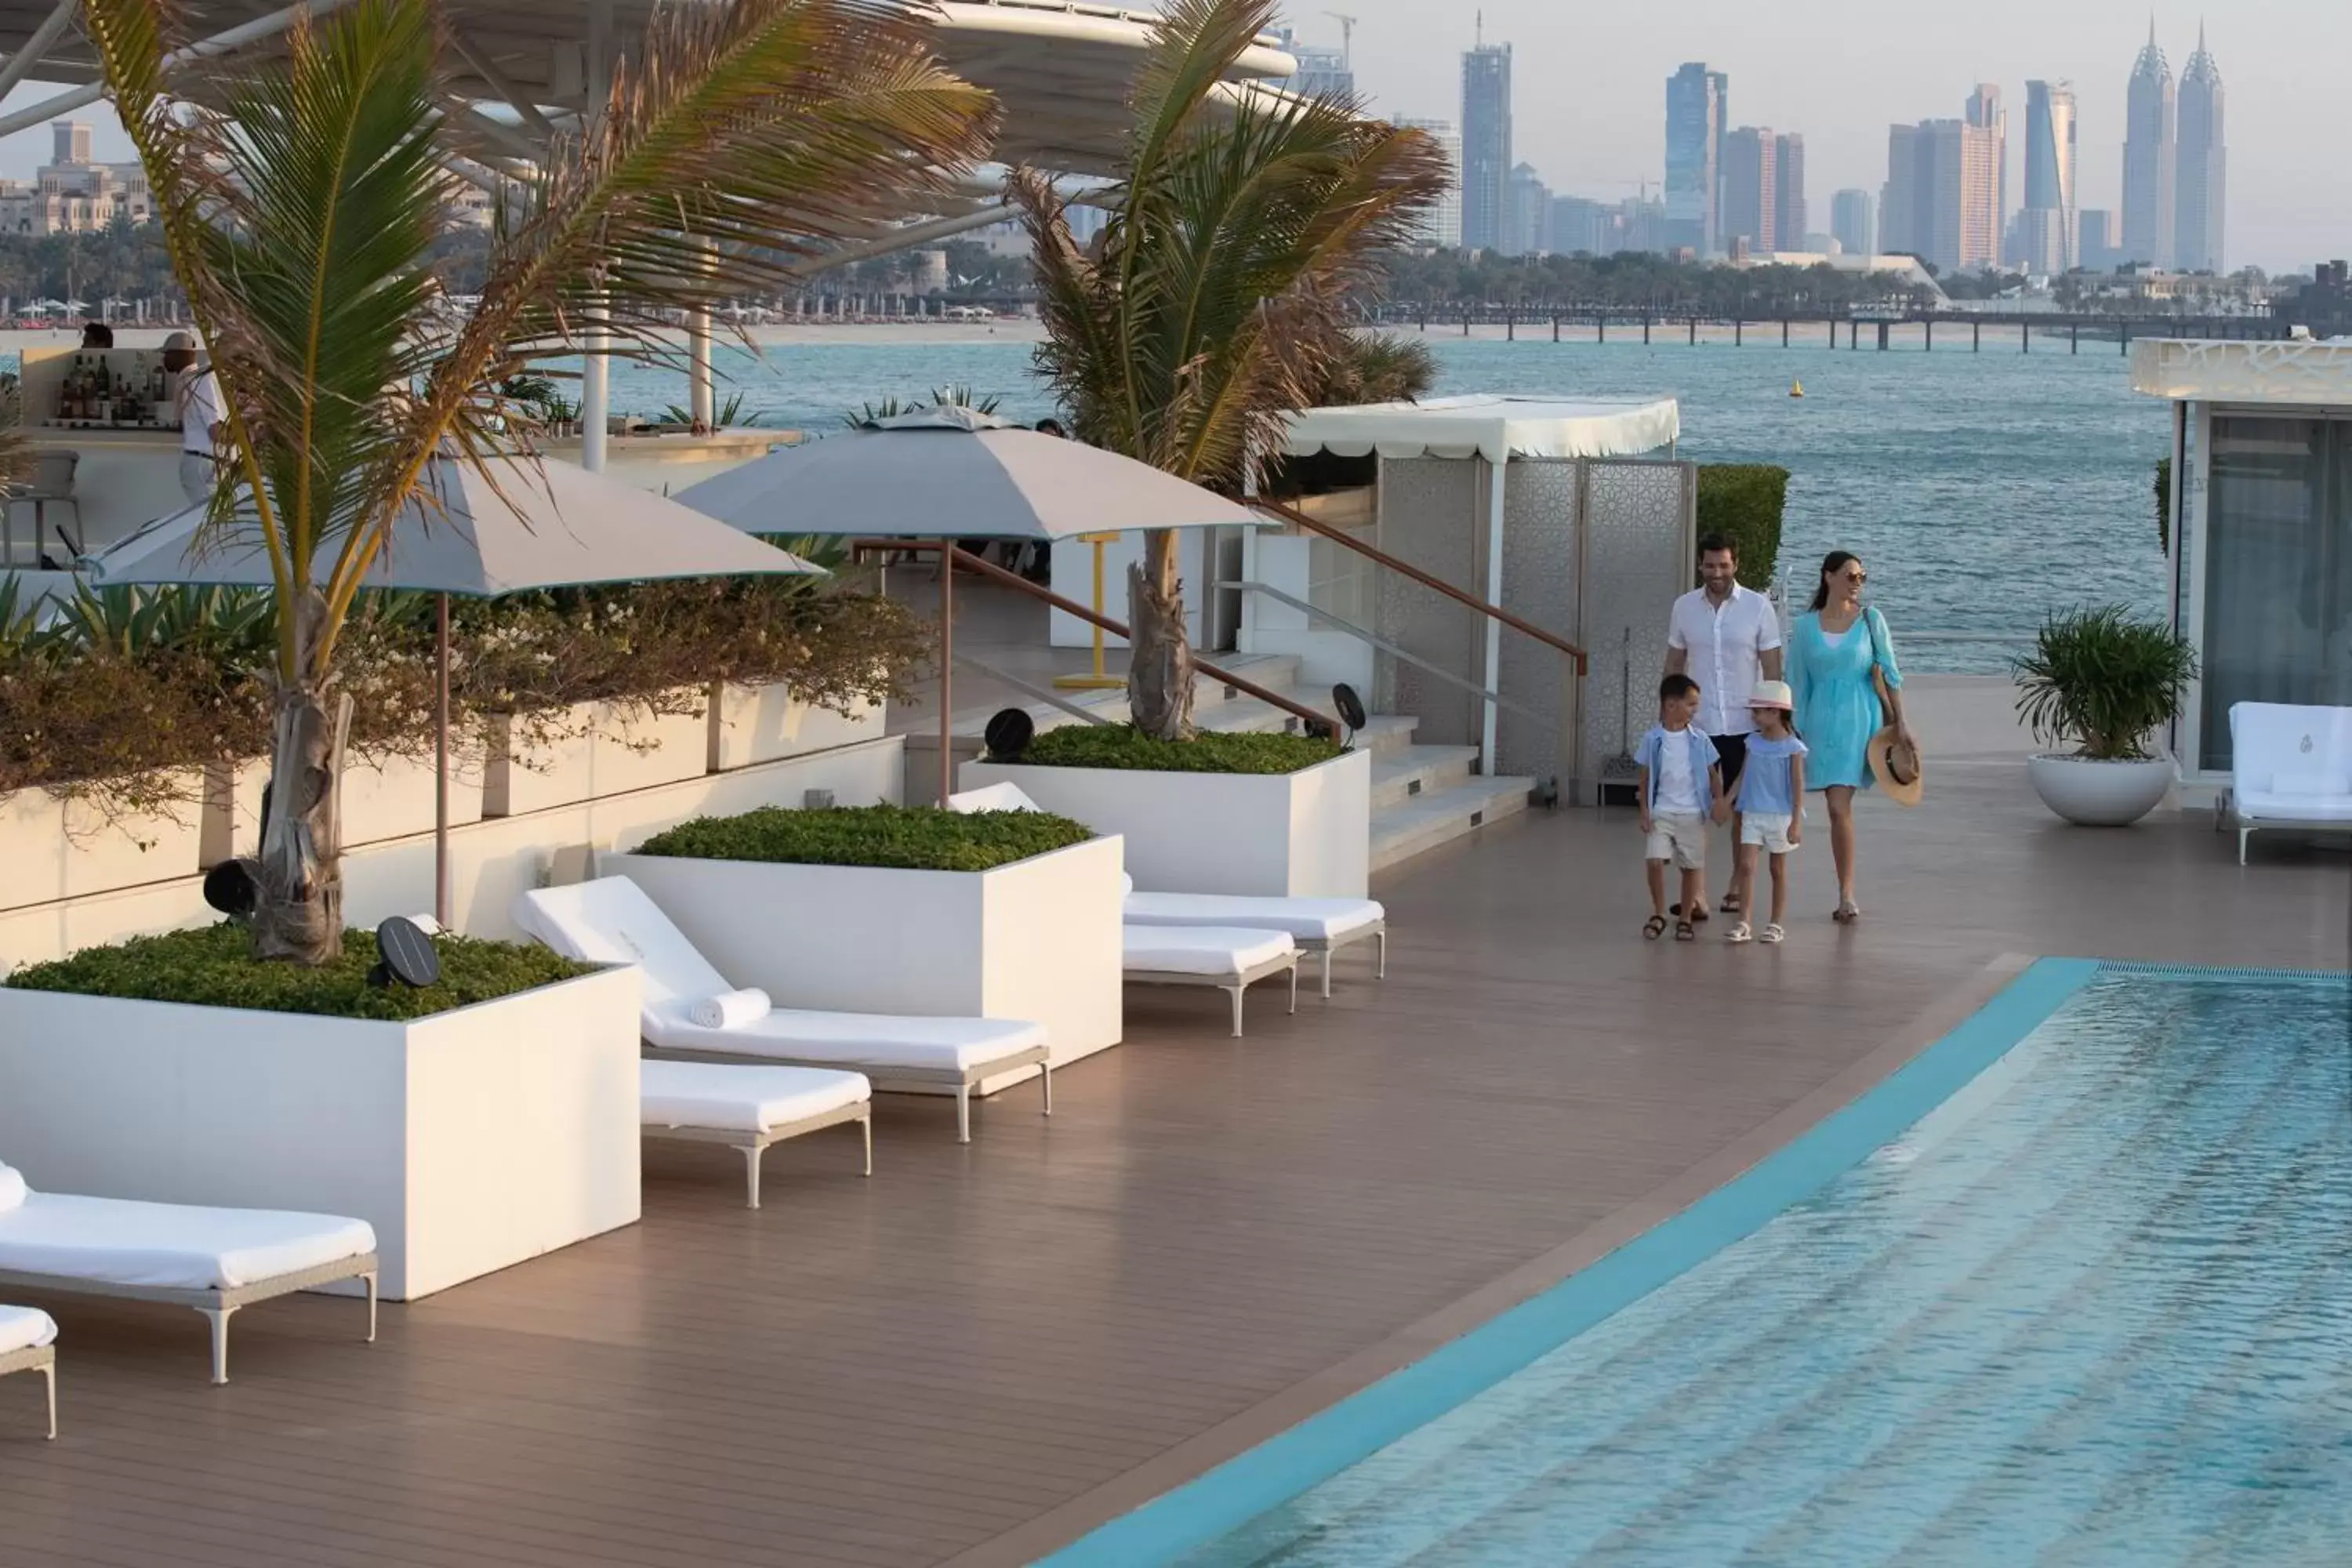 Swimming pool in Burj Al Arab Jumeirah